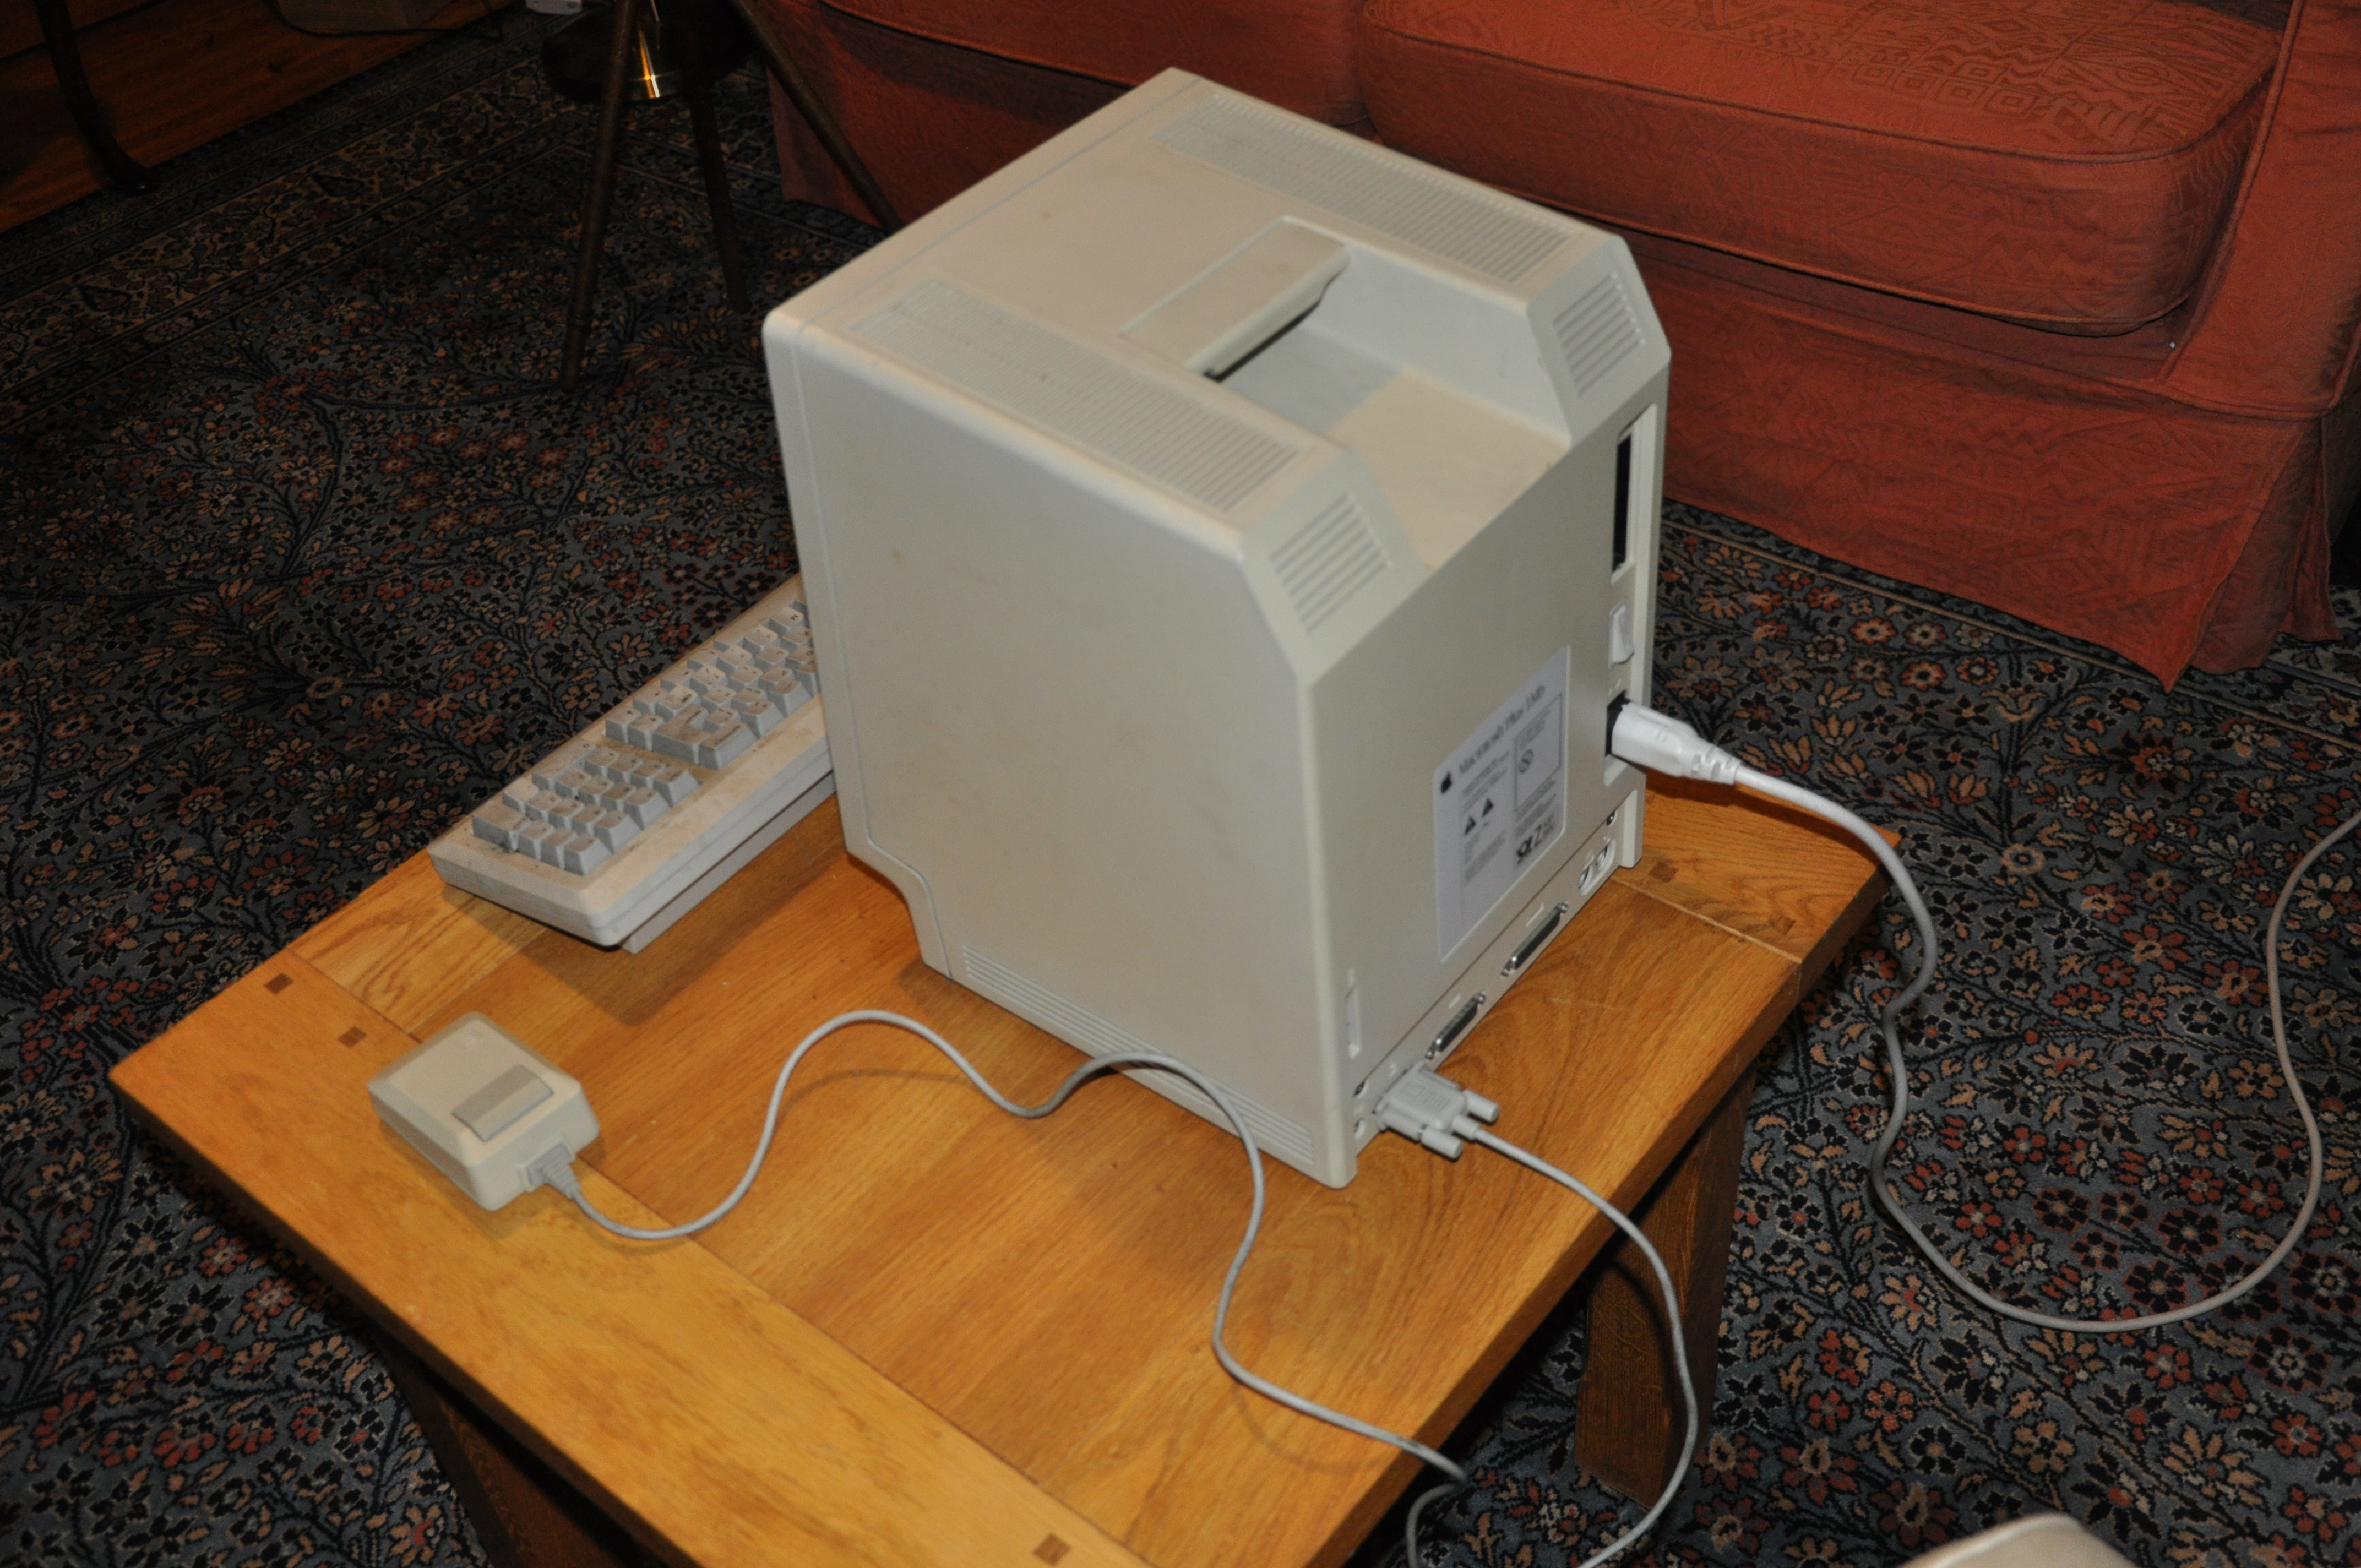 APPLE Macintosh Plus 1Mb